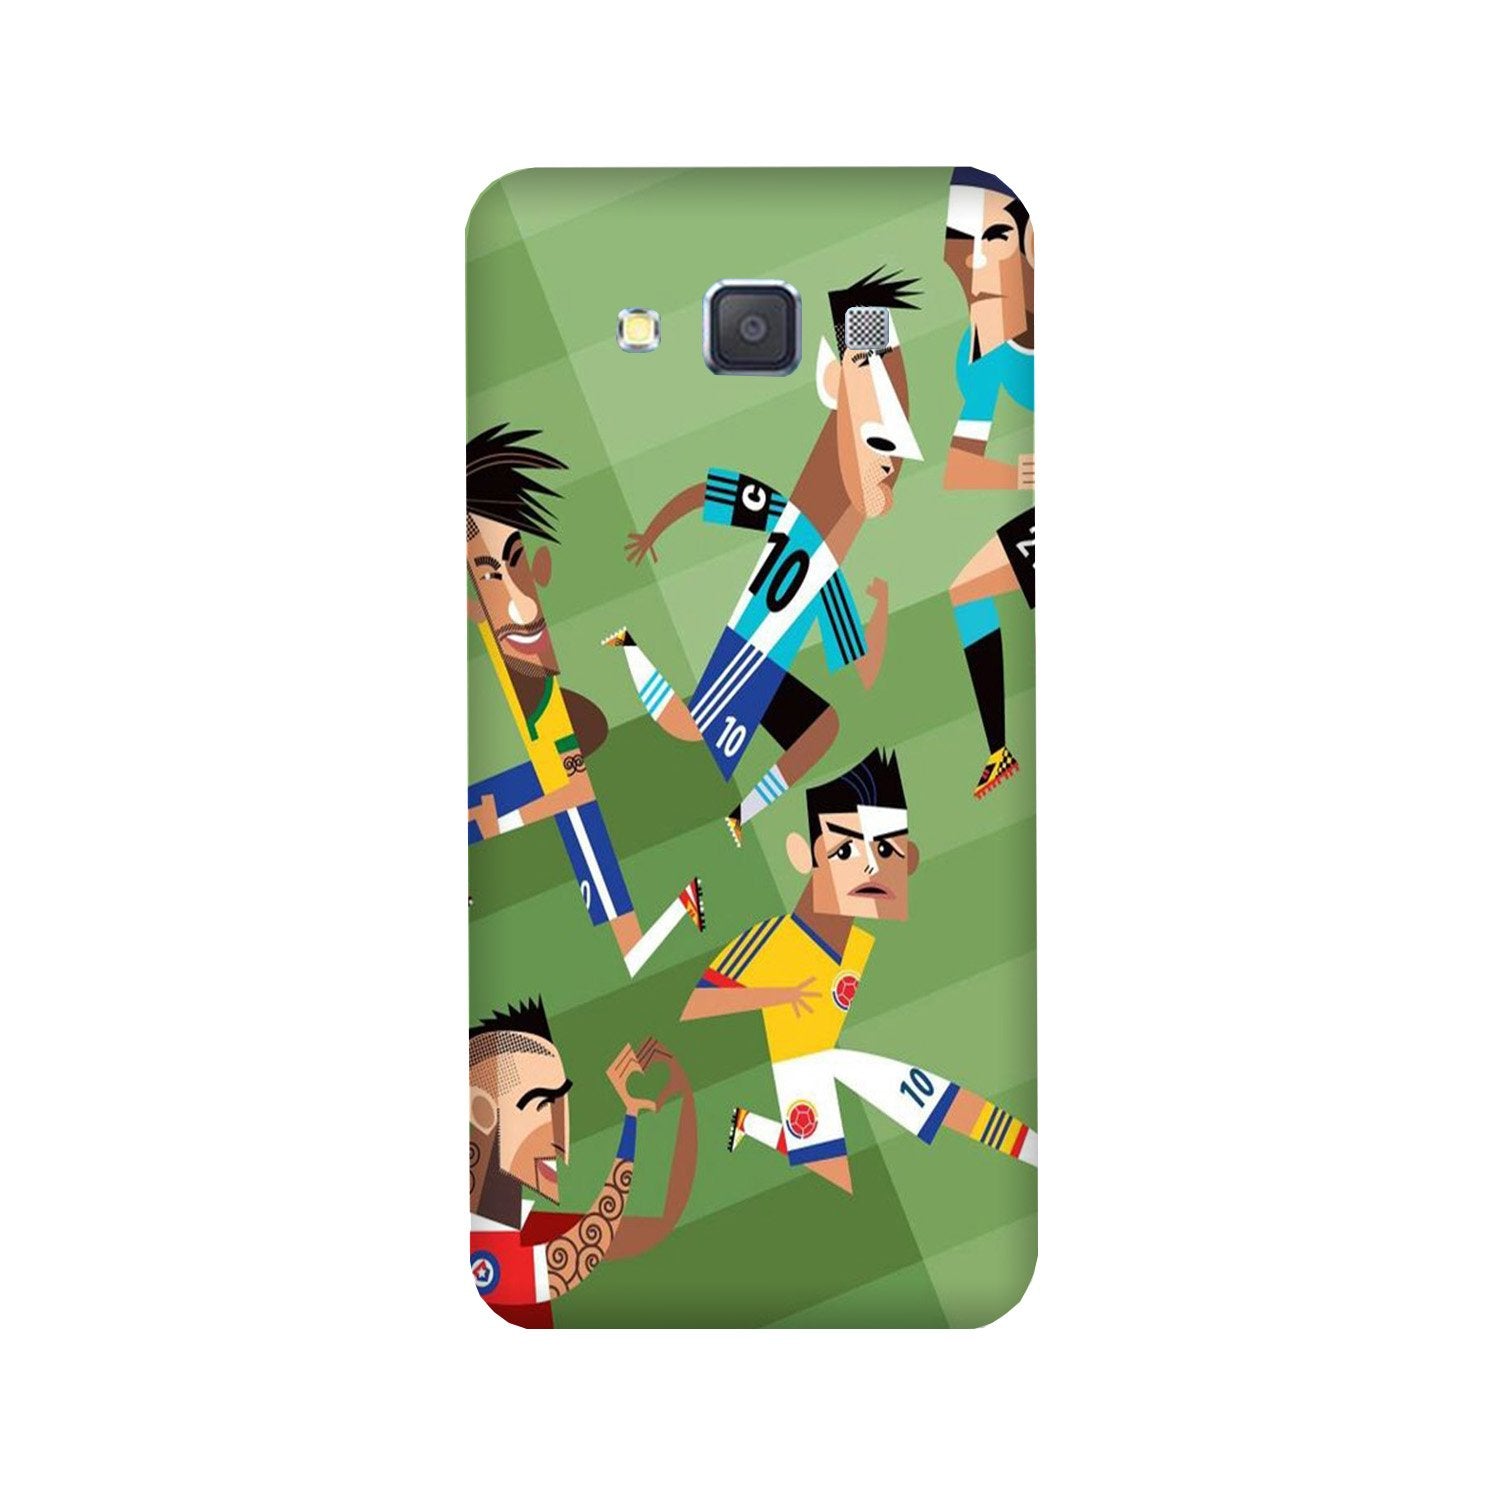 Football Case for Galaxy E5(Design - 166)